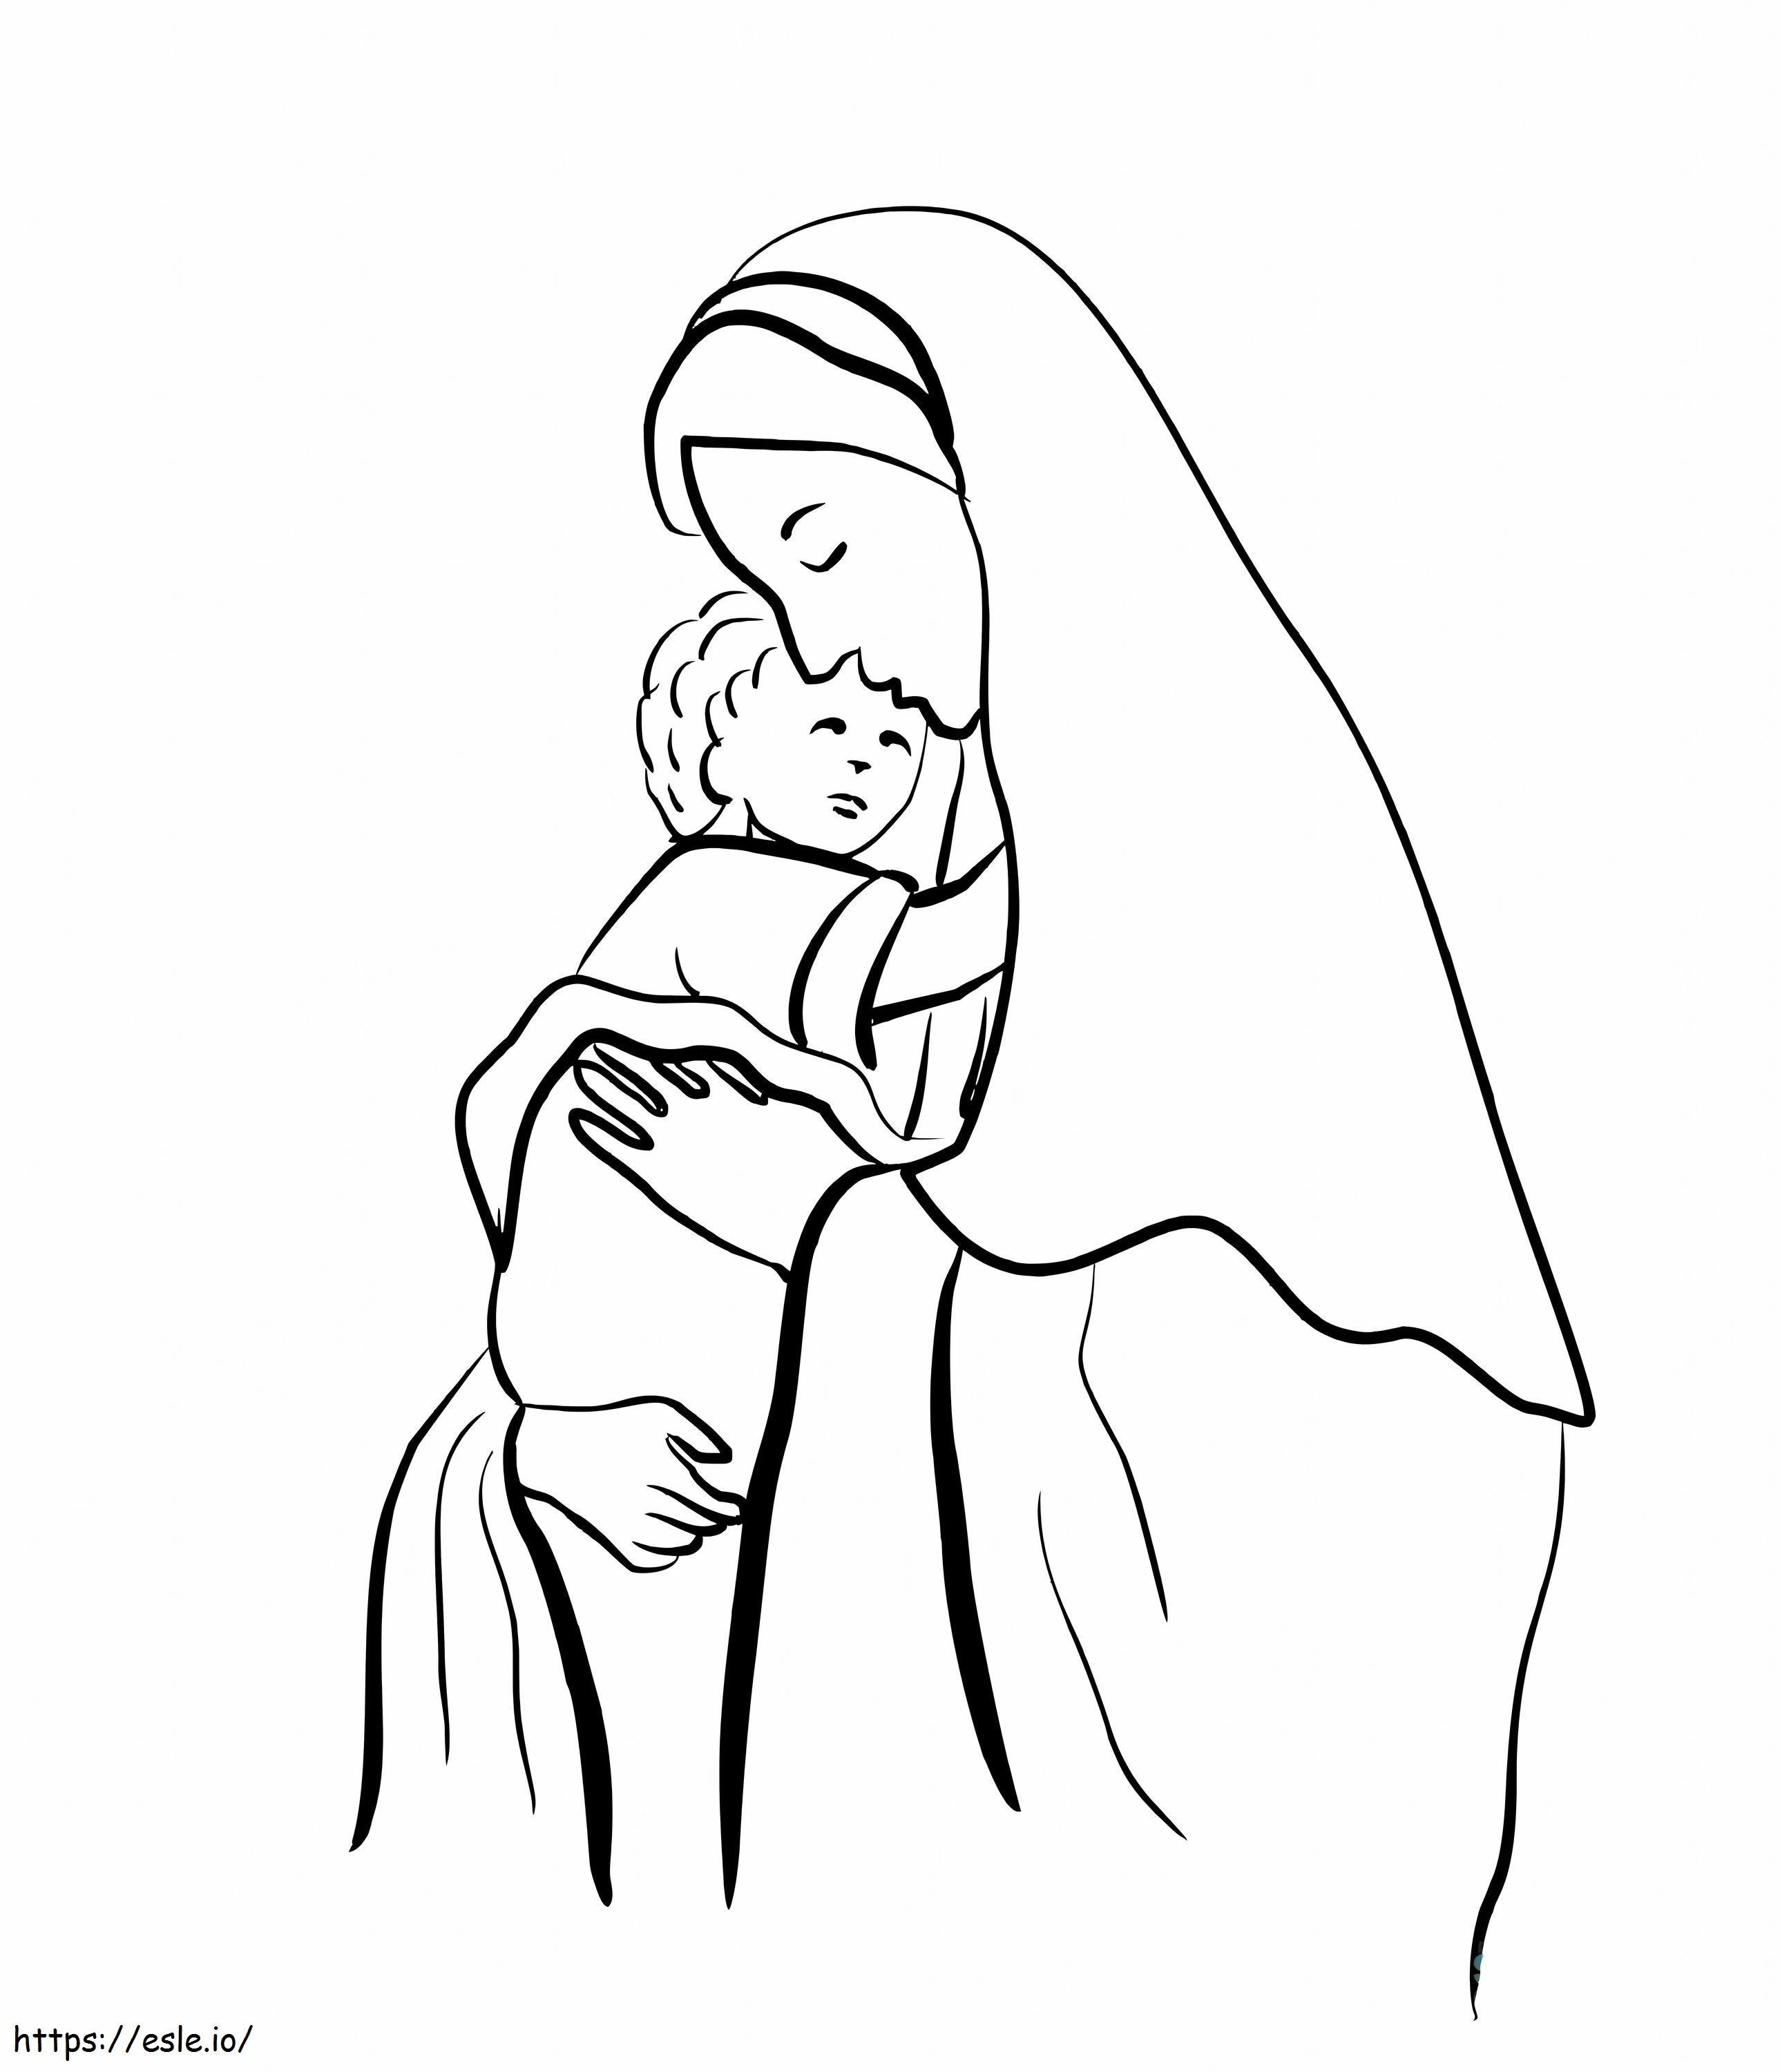 Drucken Sie Mutter Jesu aus, damit Kinder sie ausmalen können ausmalbilder